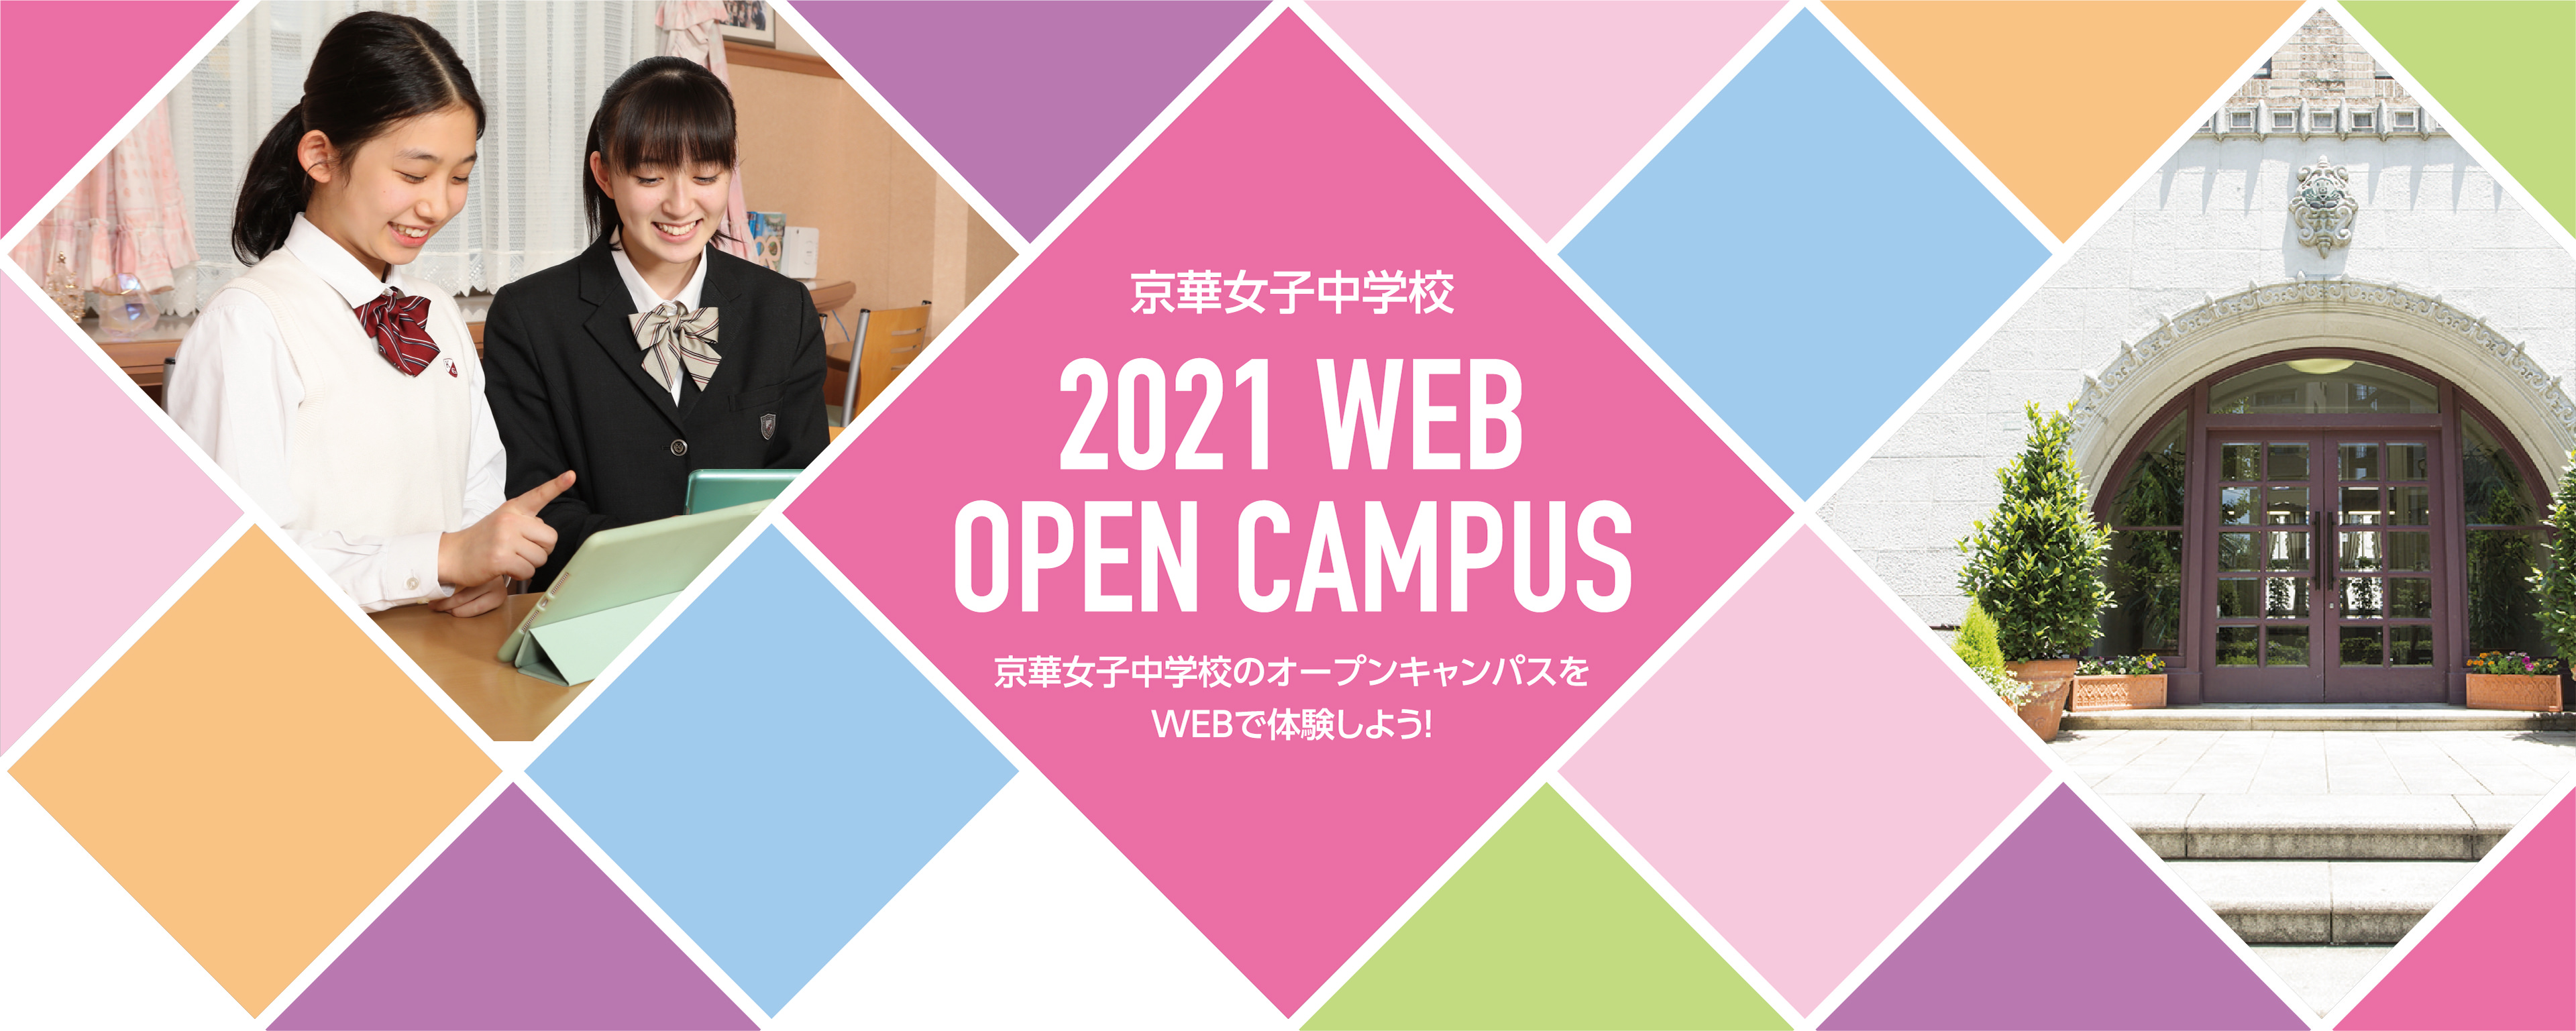 京華女子中学校 2021 WEB OPEN CAMPUS 京華女子高等学校のオープンキャンパスをWEBで体験しよう!